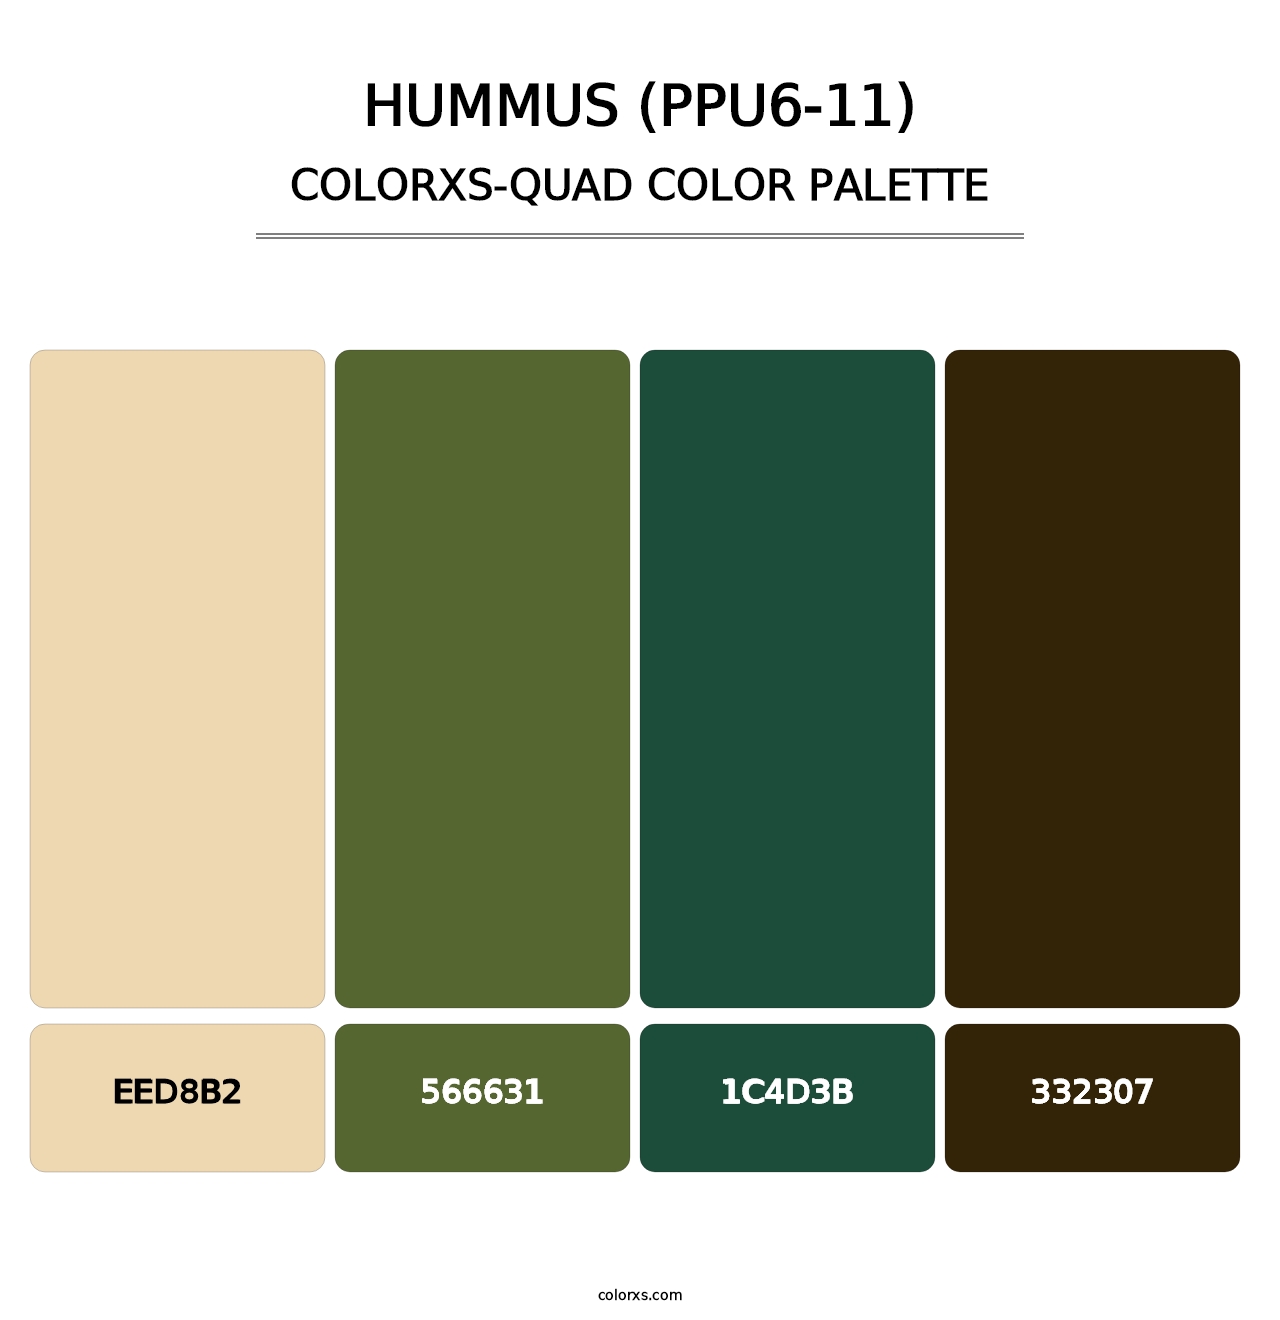 Hummus (PPU6-11) - Colorxs Quad Palette